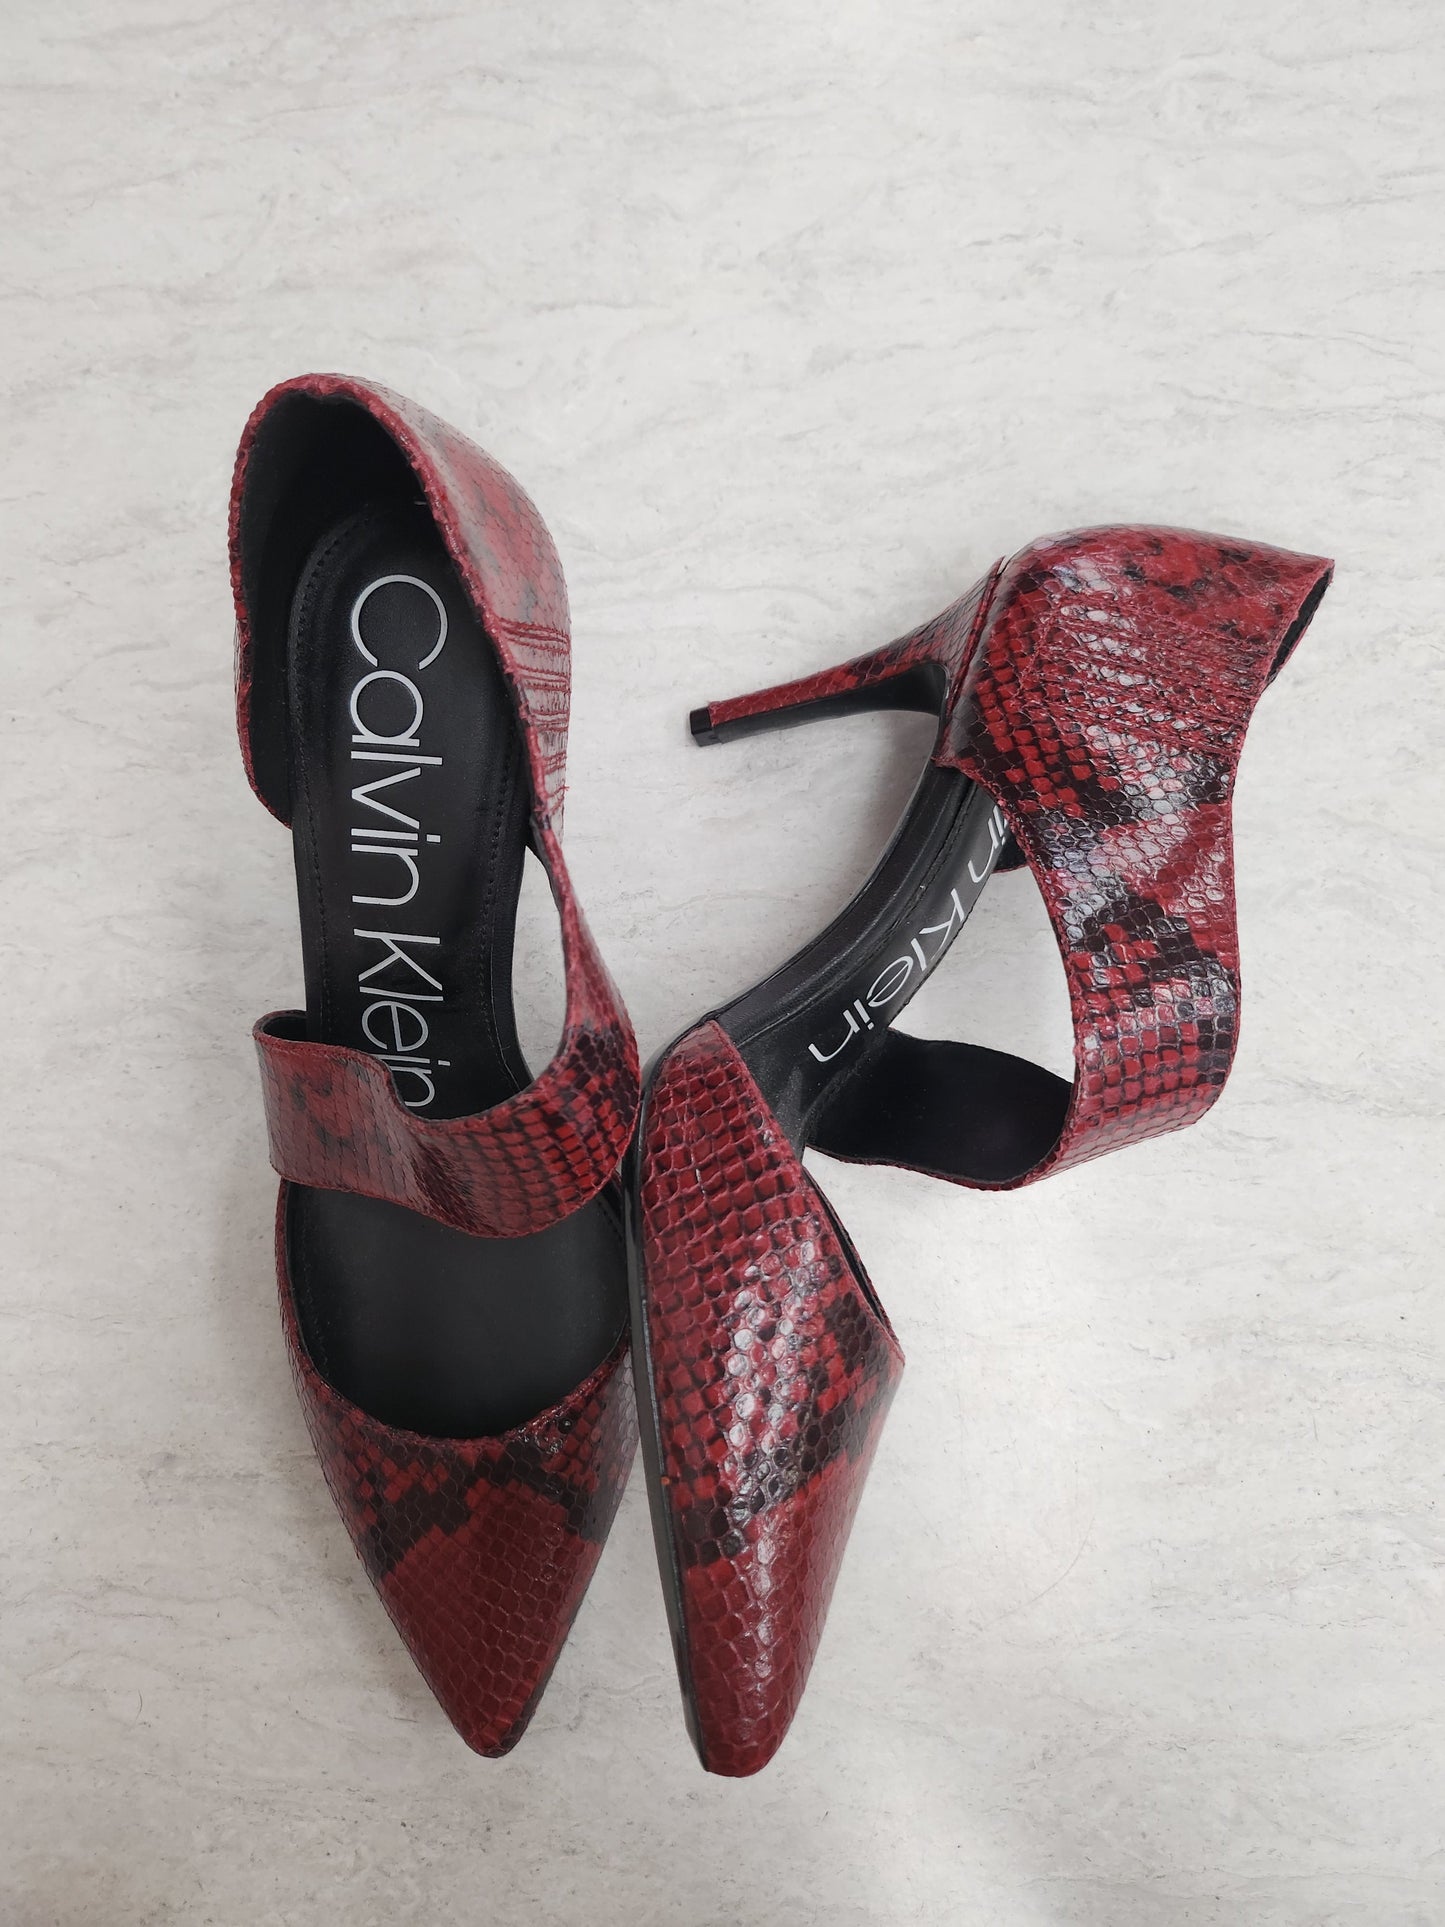 Snakeskin Print Shoes Heels Stiletto Calvin Klein, Size 9